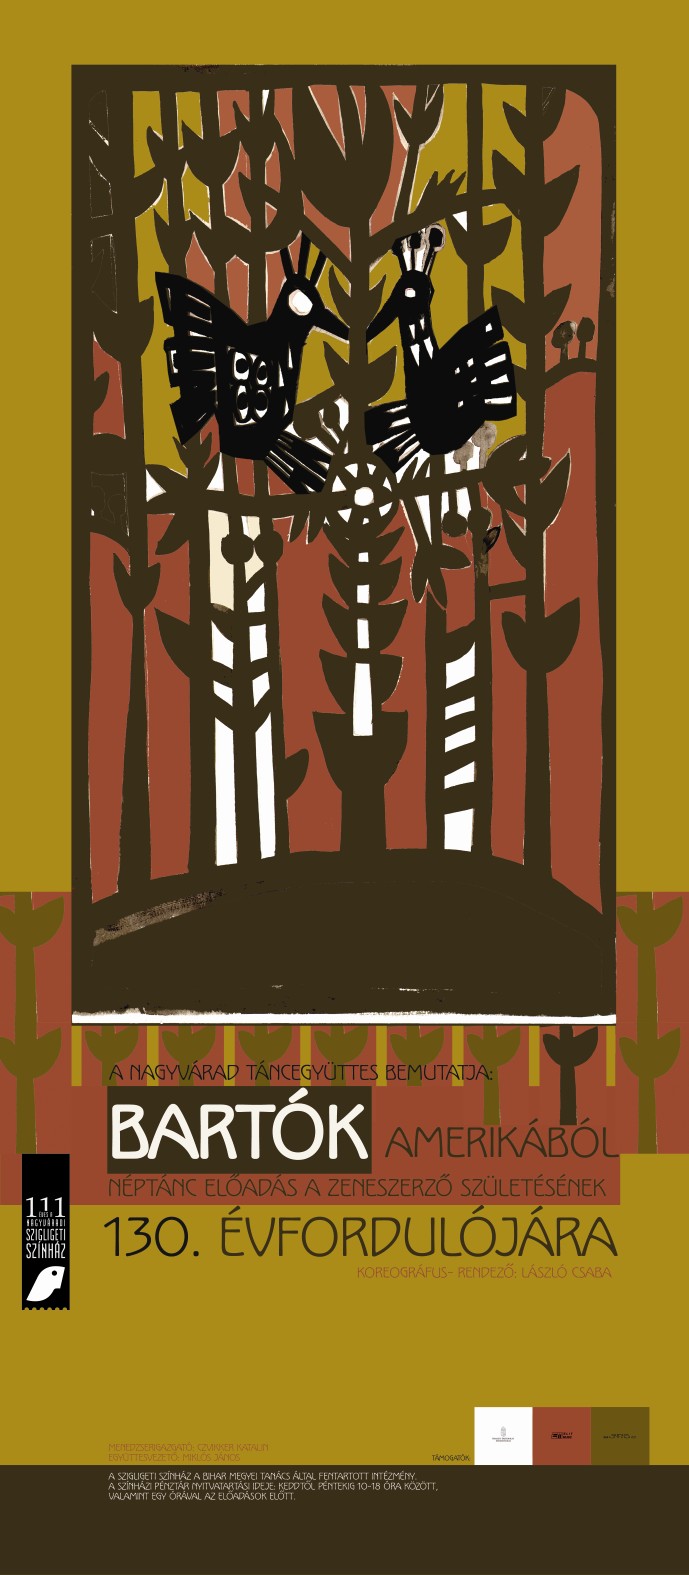 Bartók Amerikából